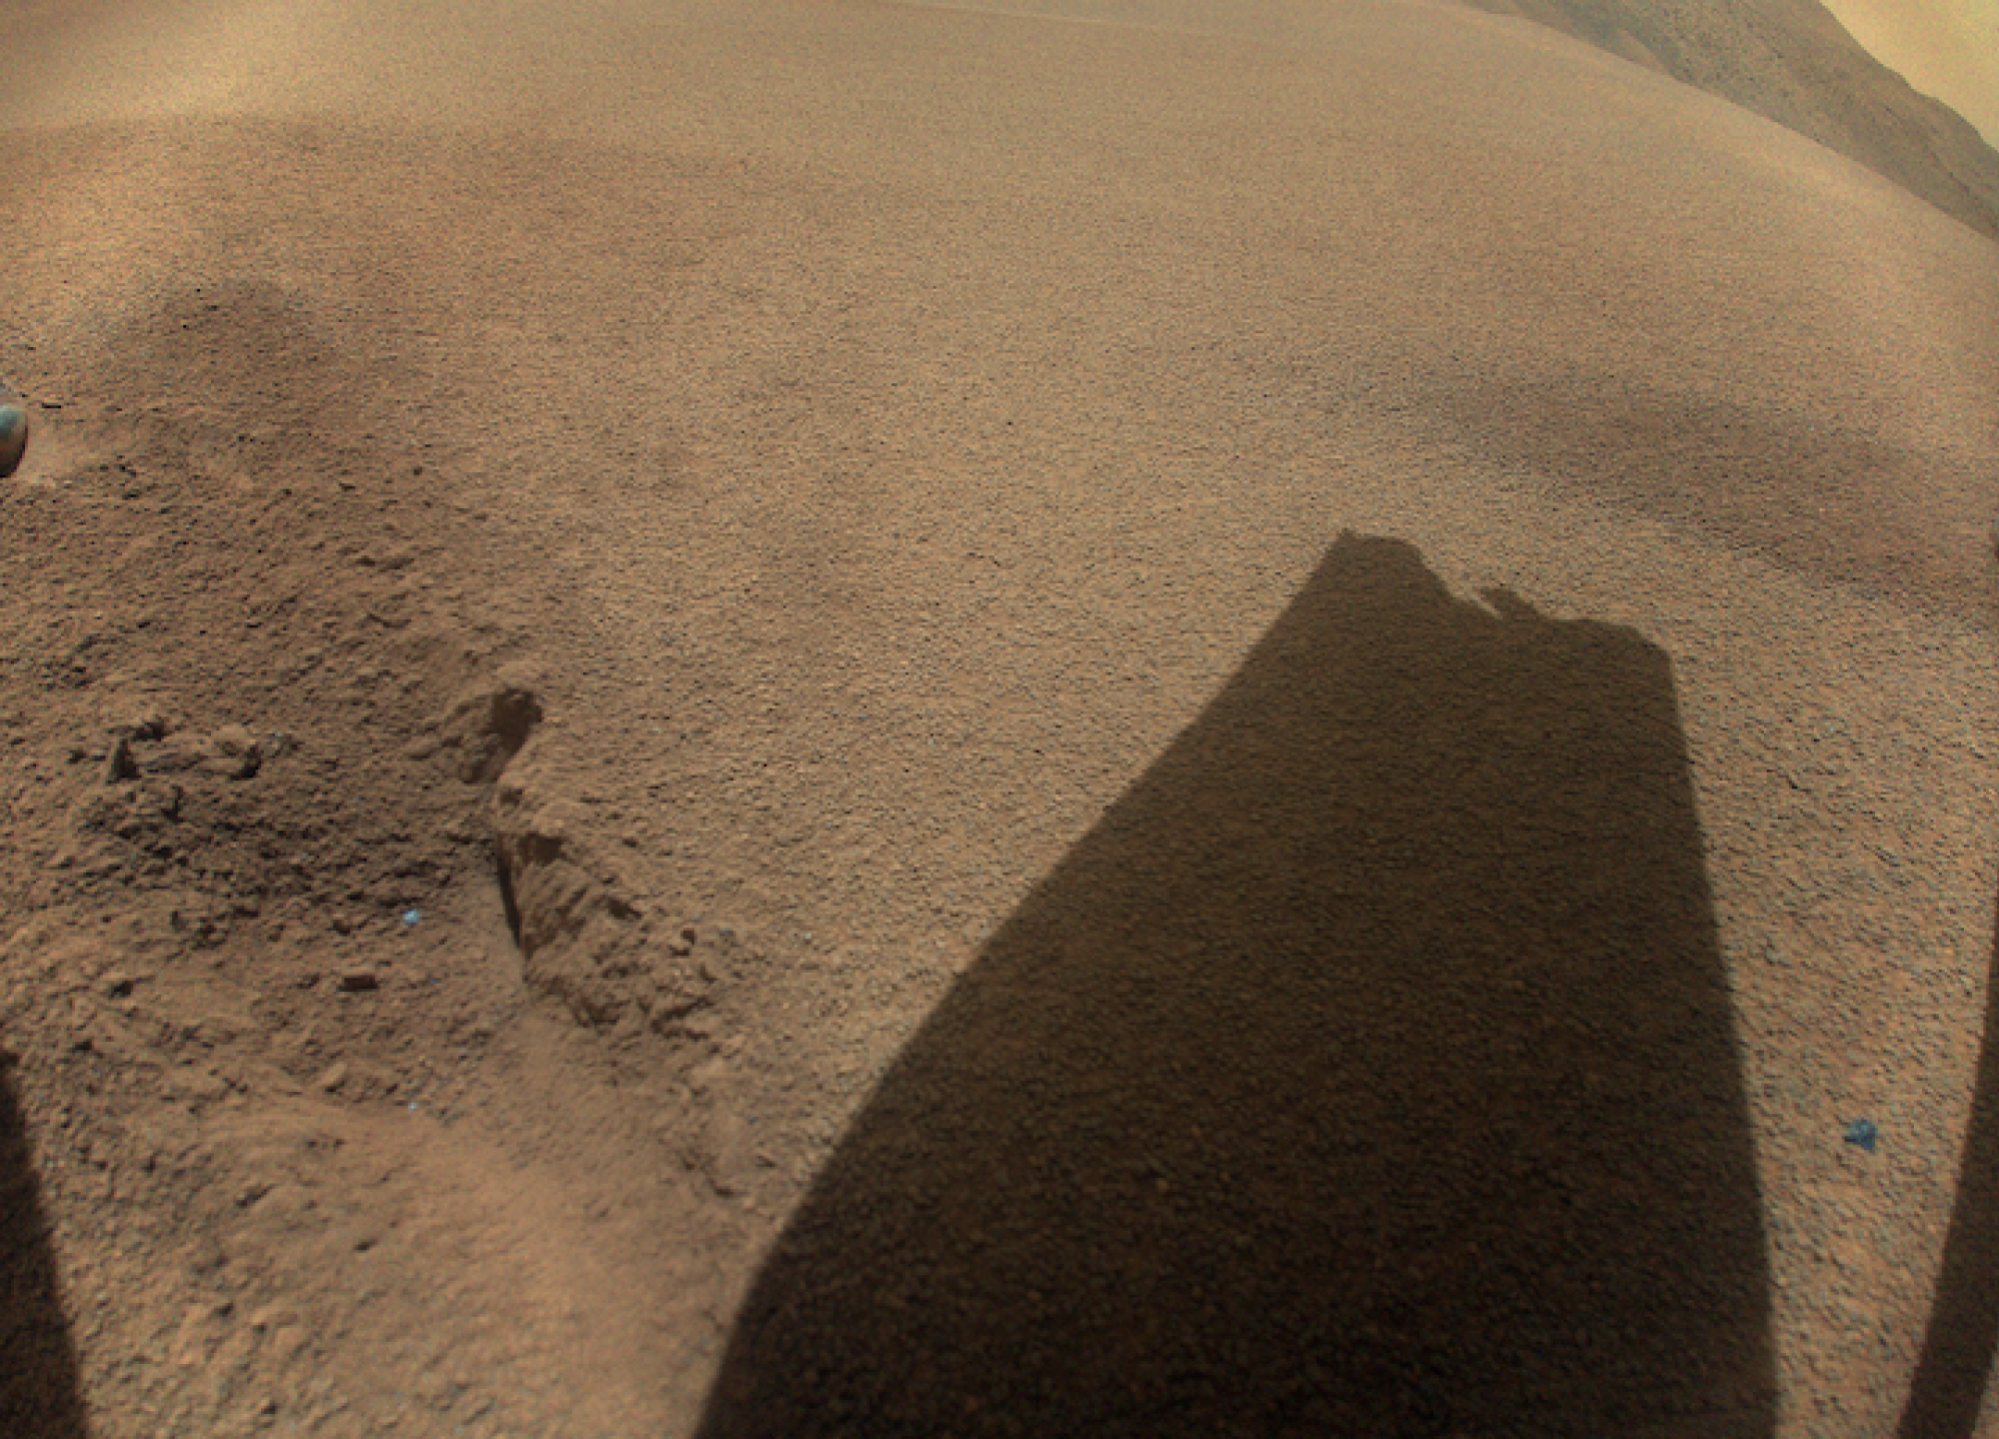 L’ombre d’une pointe de rotor Ingenuity cassée projetée sur le sol martien.